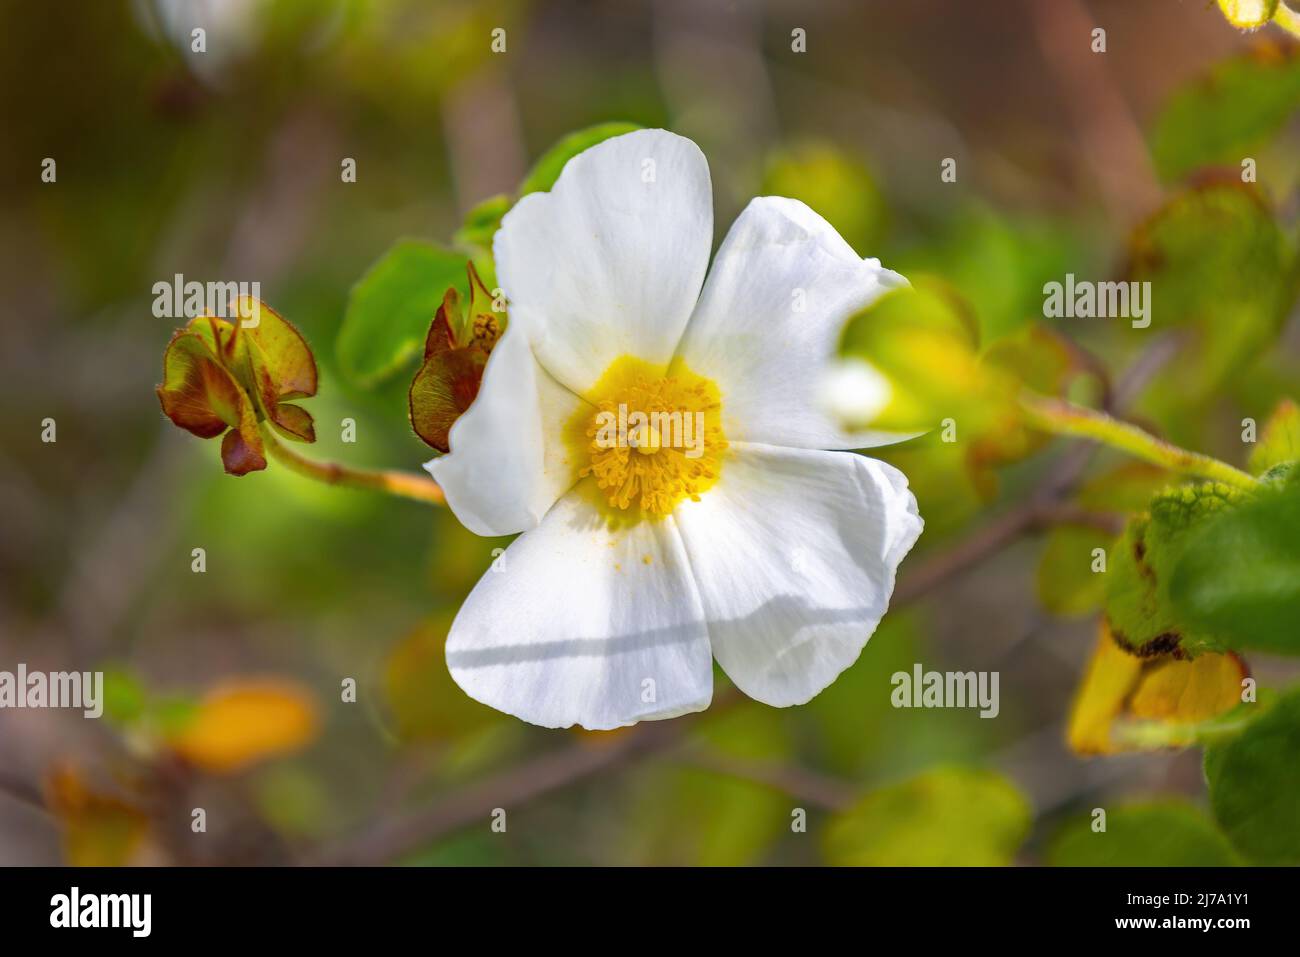 Cistus salviifolius, gebräuchliche Namen Salbei-leaved Rock-Rose, Salvia cistus oder Gallipoli Rose, ist ein Strauch der Familie Cistaceae. Stockfoto